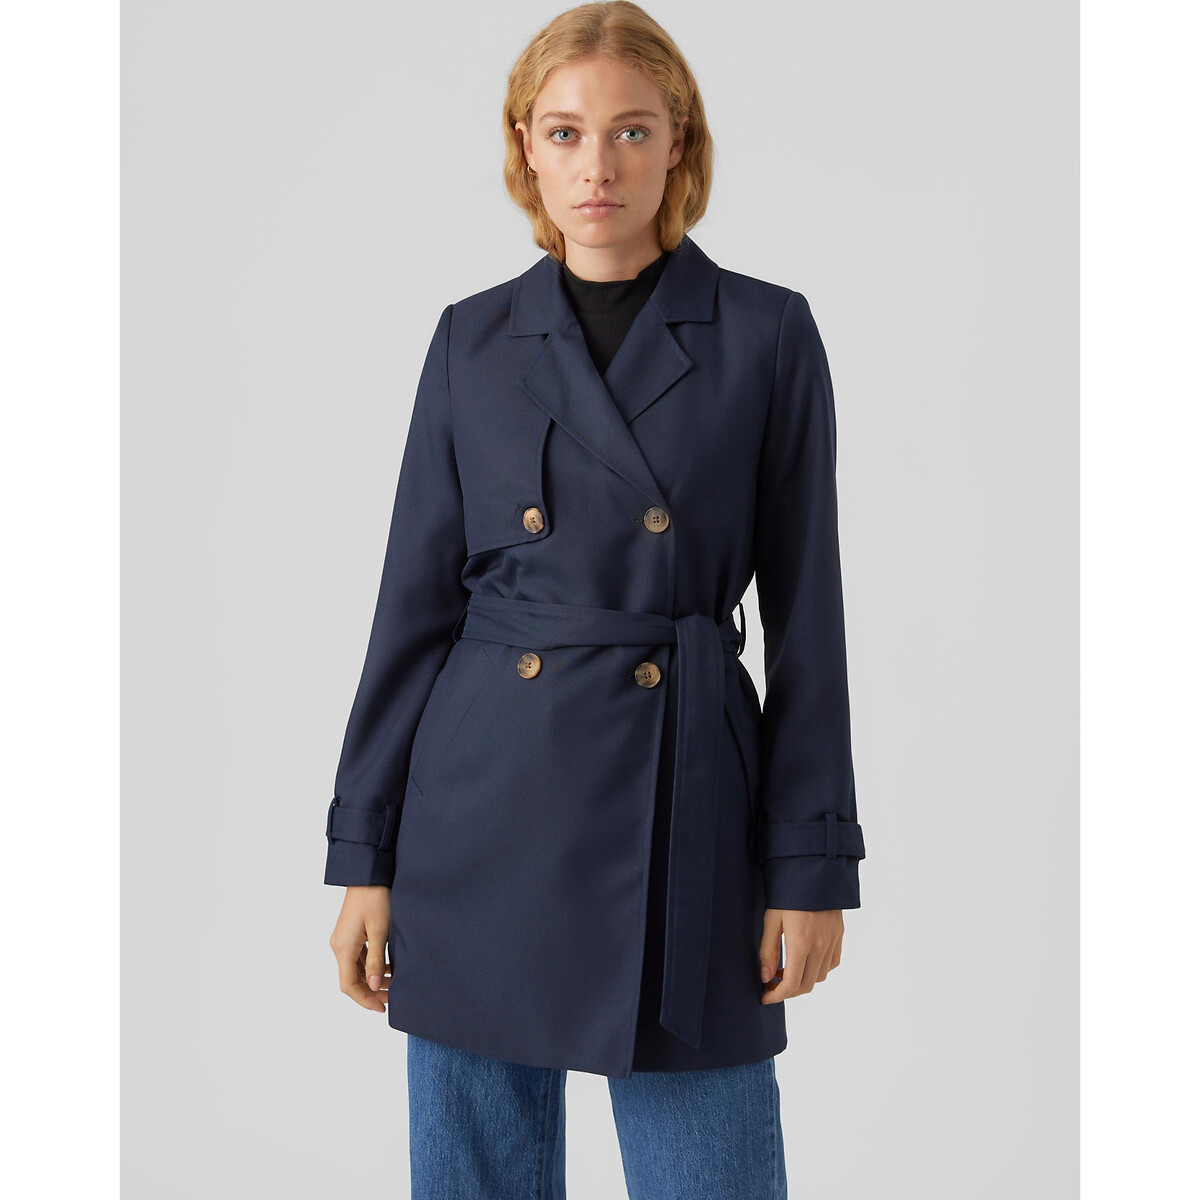 Tie-waist trench coat, navy, Vero Moda | La Redoute